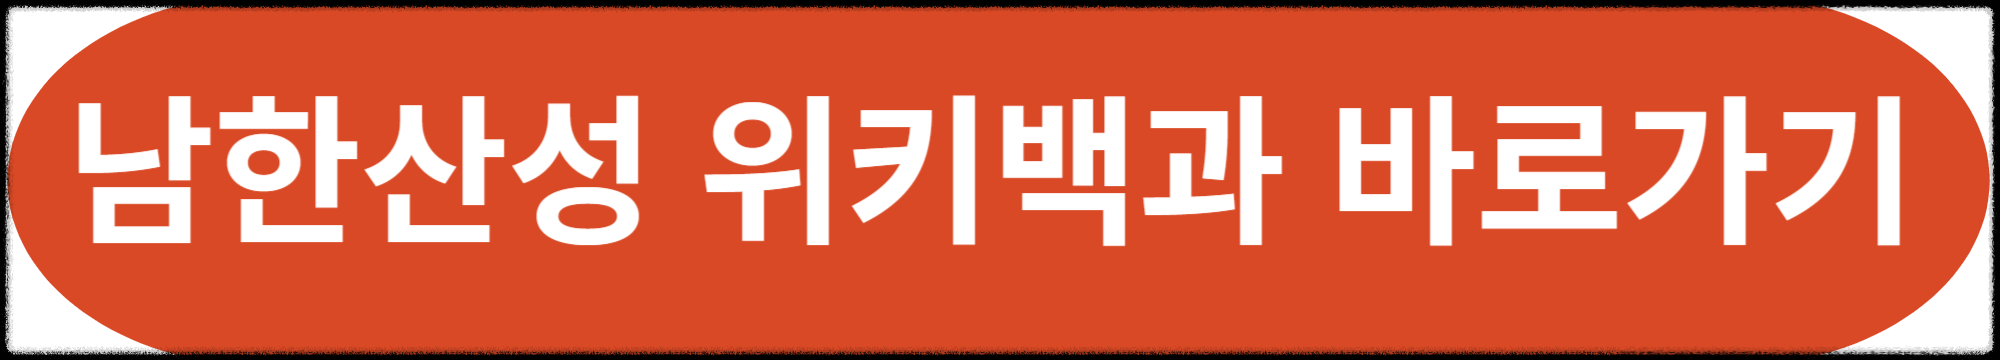 남한산성 위키백과